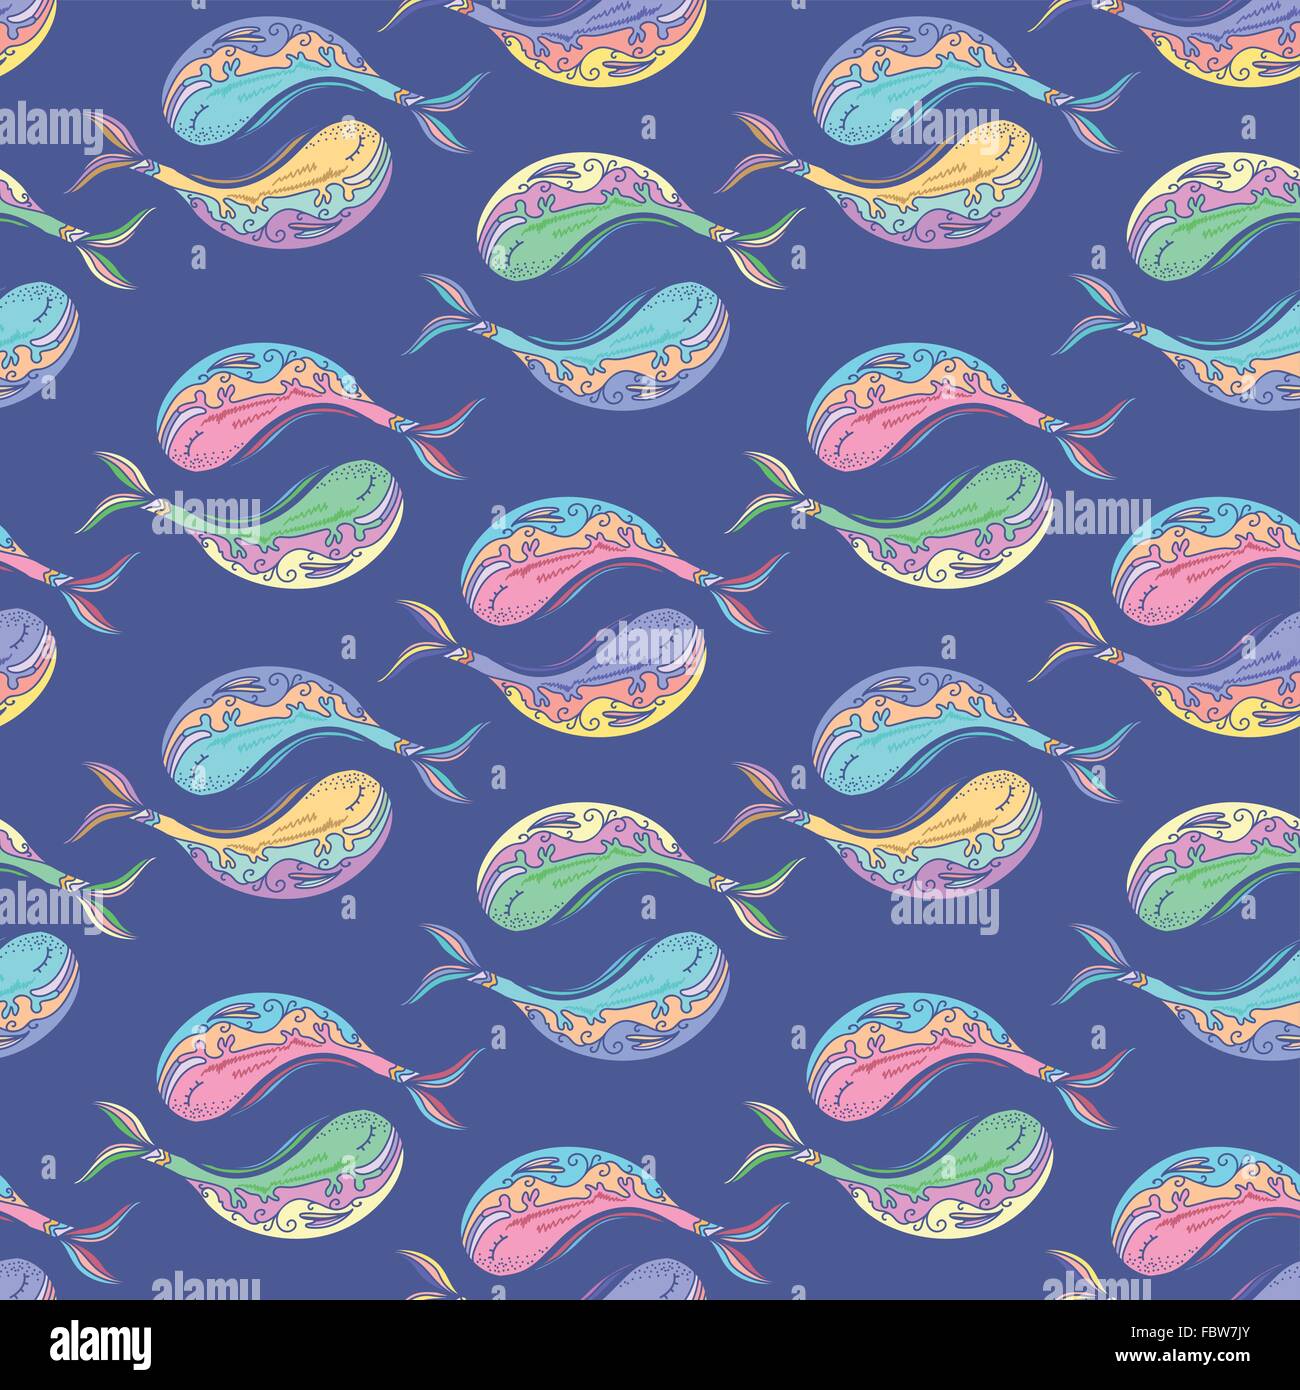 Vecteur bleu motif dans la mer avec des poissons de mer style croquis Illustration de Vecteur